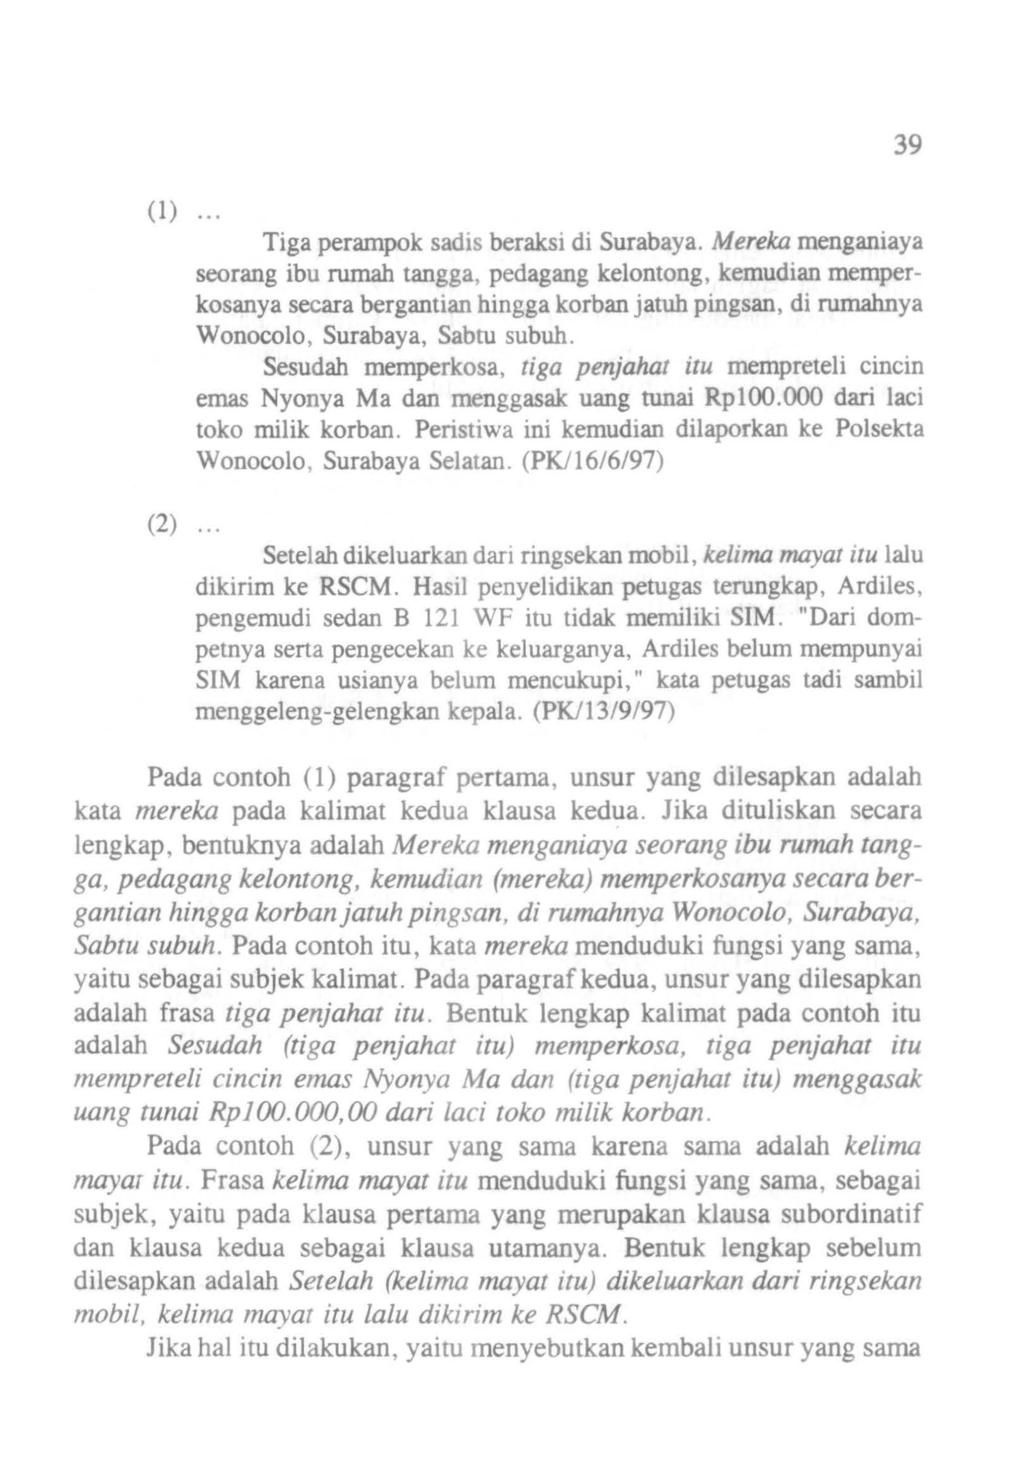 (1) Tiga perampok sadis beraksi di Surabaya.